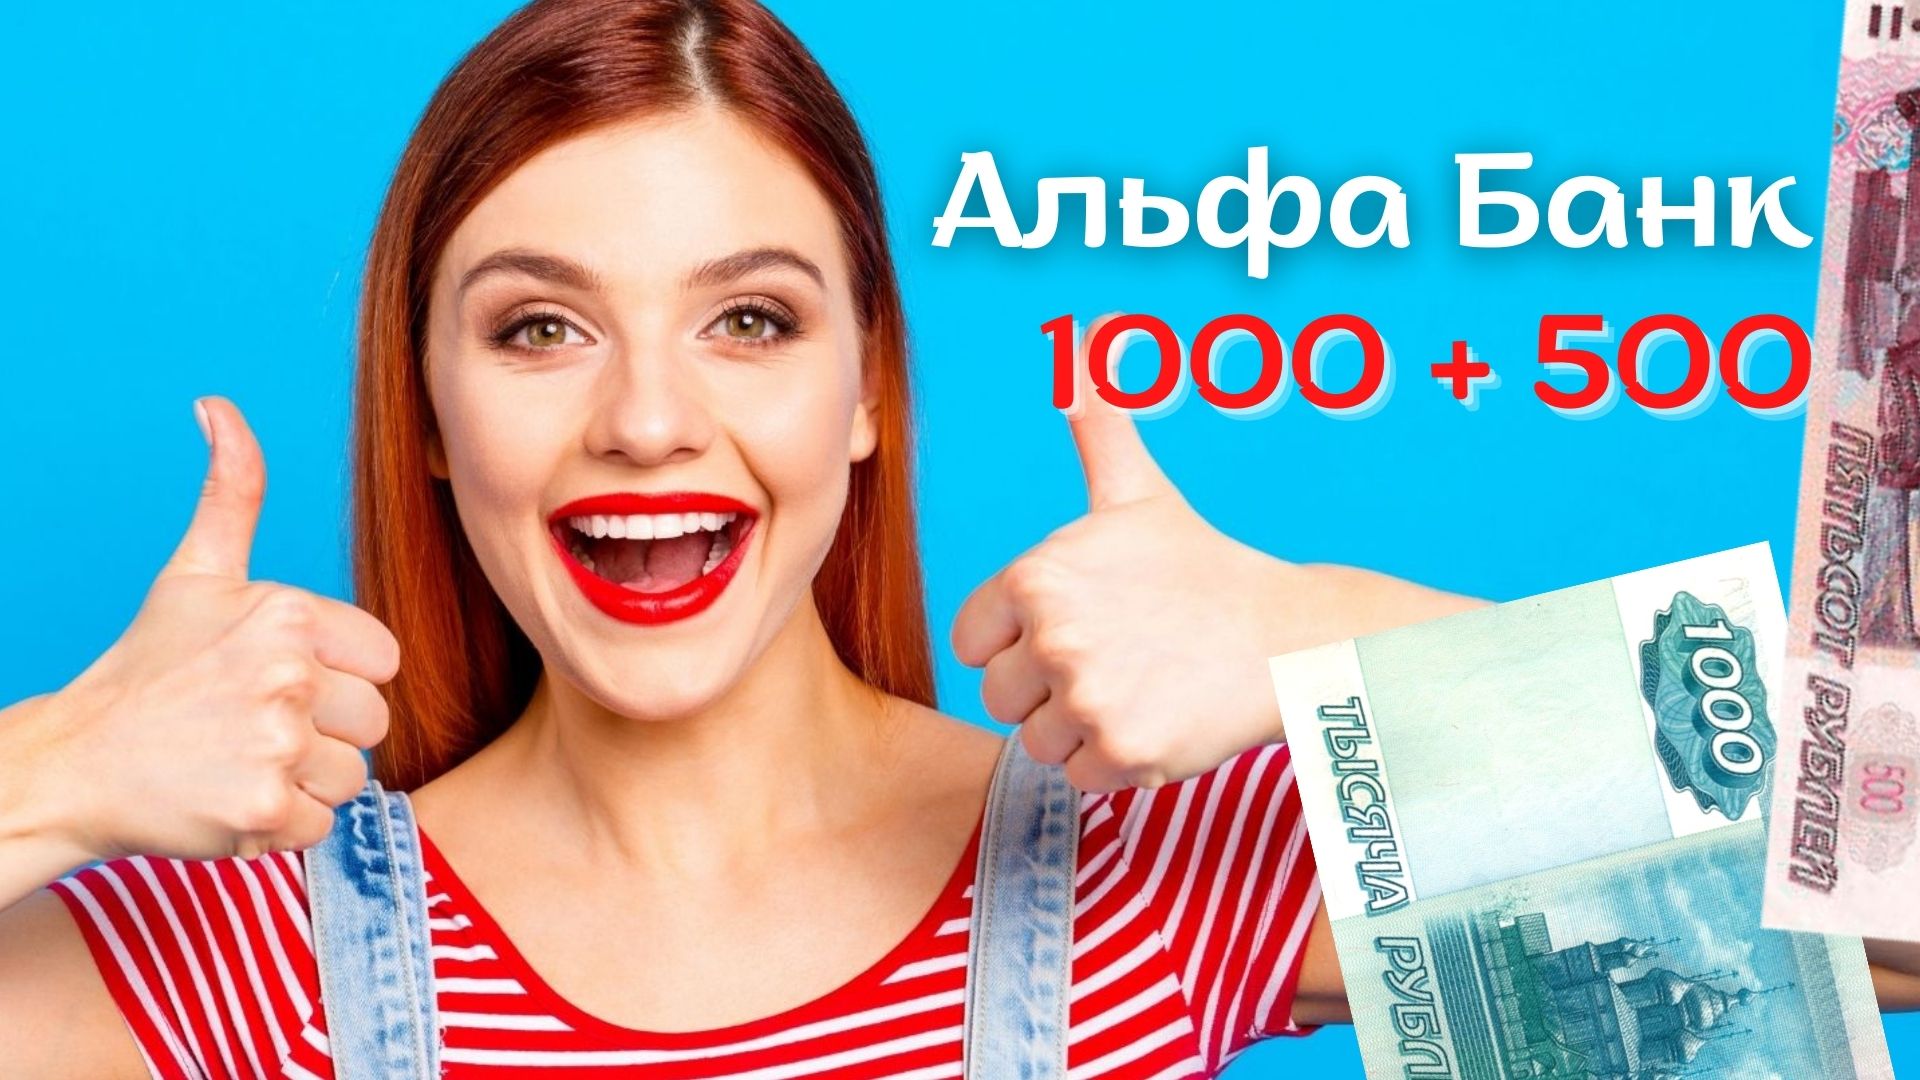 Альфа Банк платит по акции Приведи друга 1000 рублей за друга + 500 другу